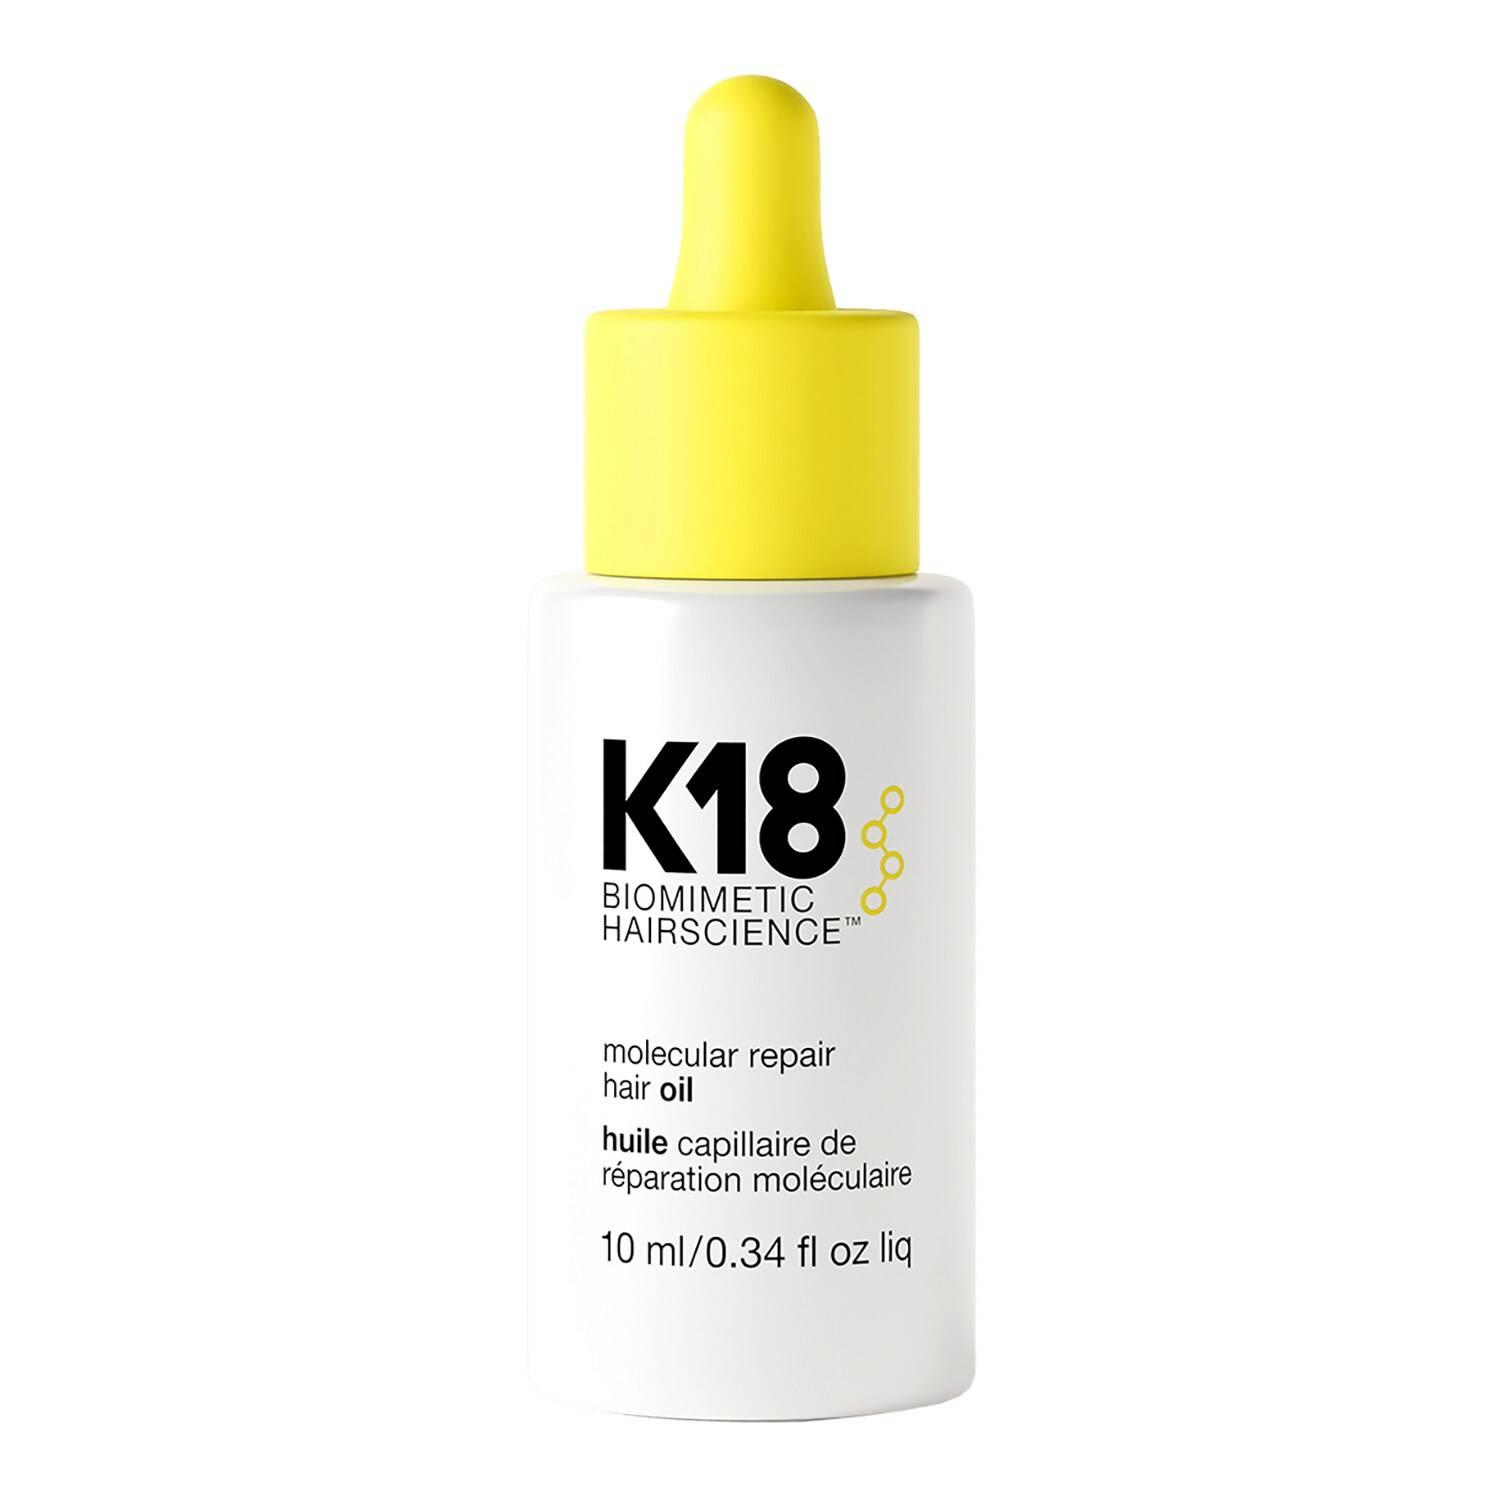 K18 Molecular Repair Hair Oil 10ml | SEPHORA UK